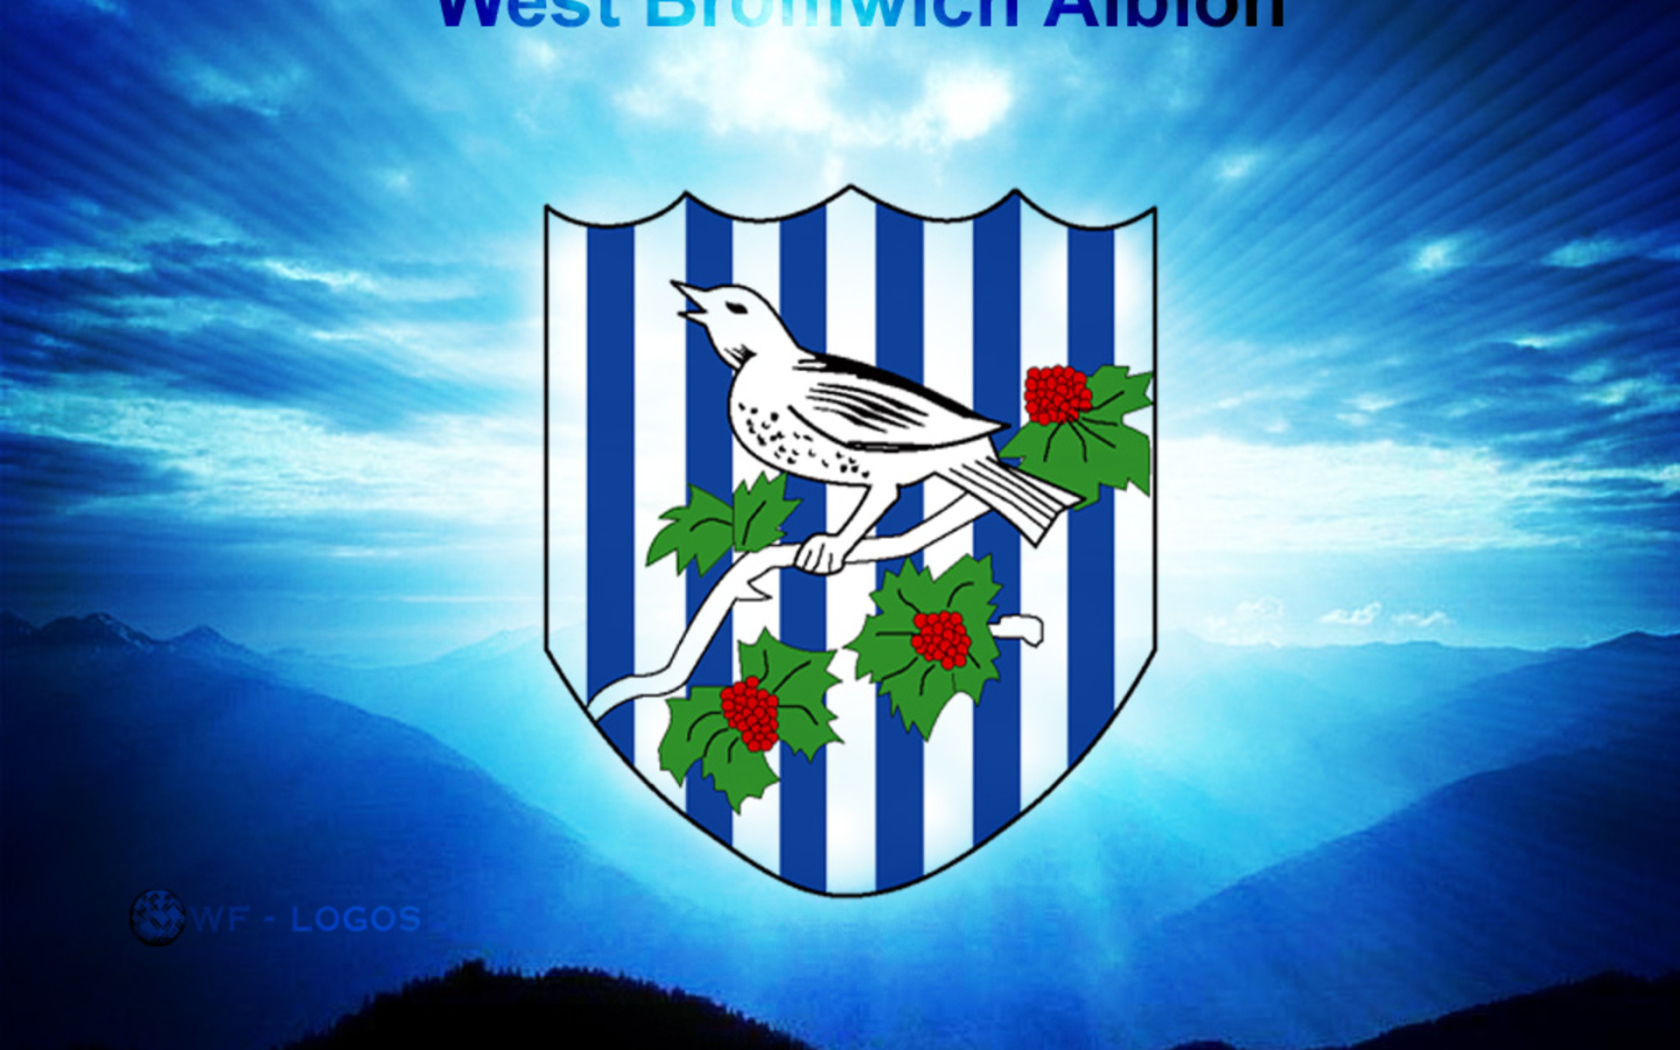  Famous West Bromwich Albion